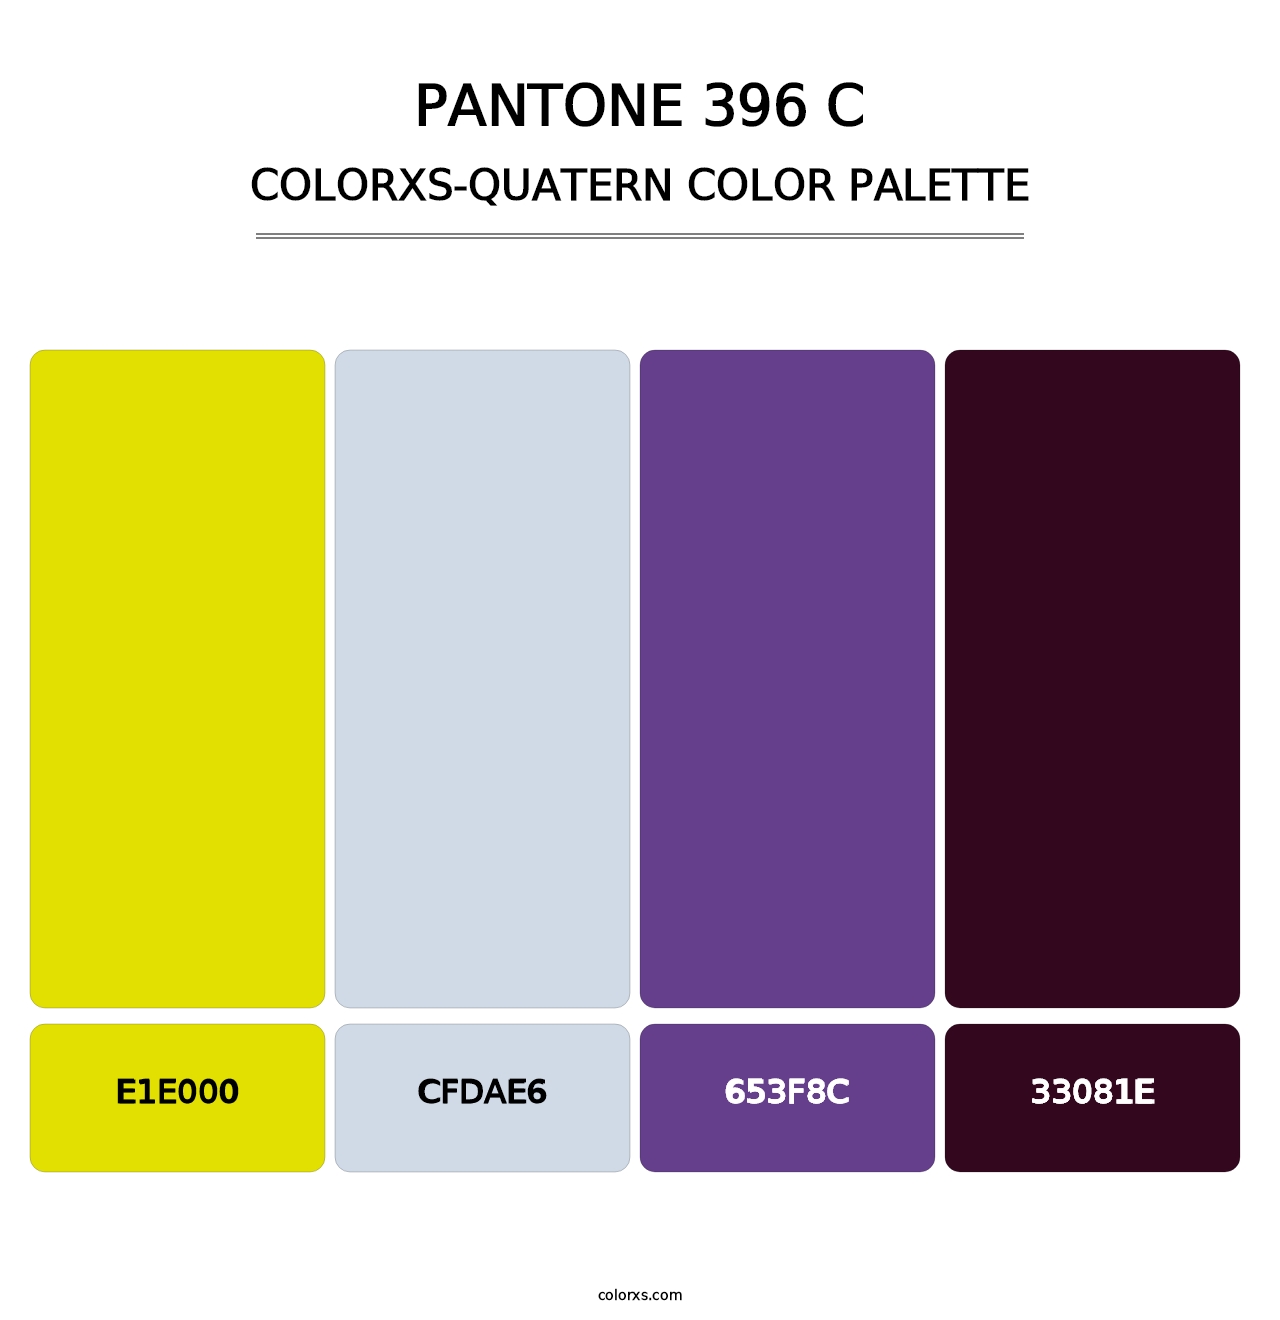 PANTONE 396 C - Colorxs Quatern Palette